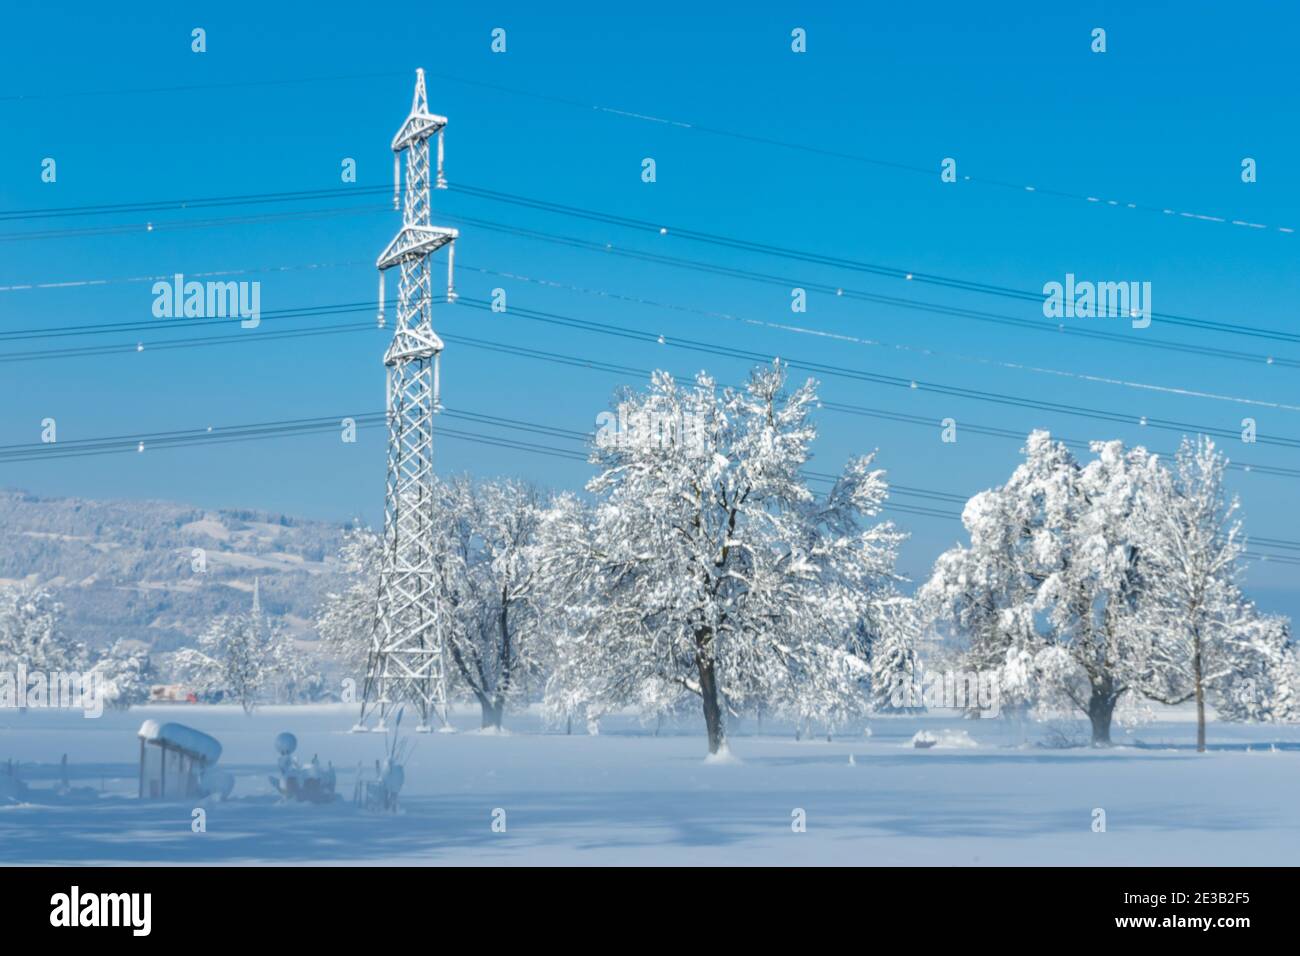 Winter, verschneite Bäume und Hochspannungsleitung im Rheintal.  snow-covered trees, high voltage line in the Rhine valley. snowy field, morning light Stock Photo